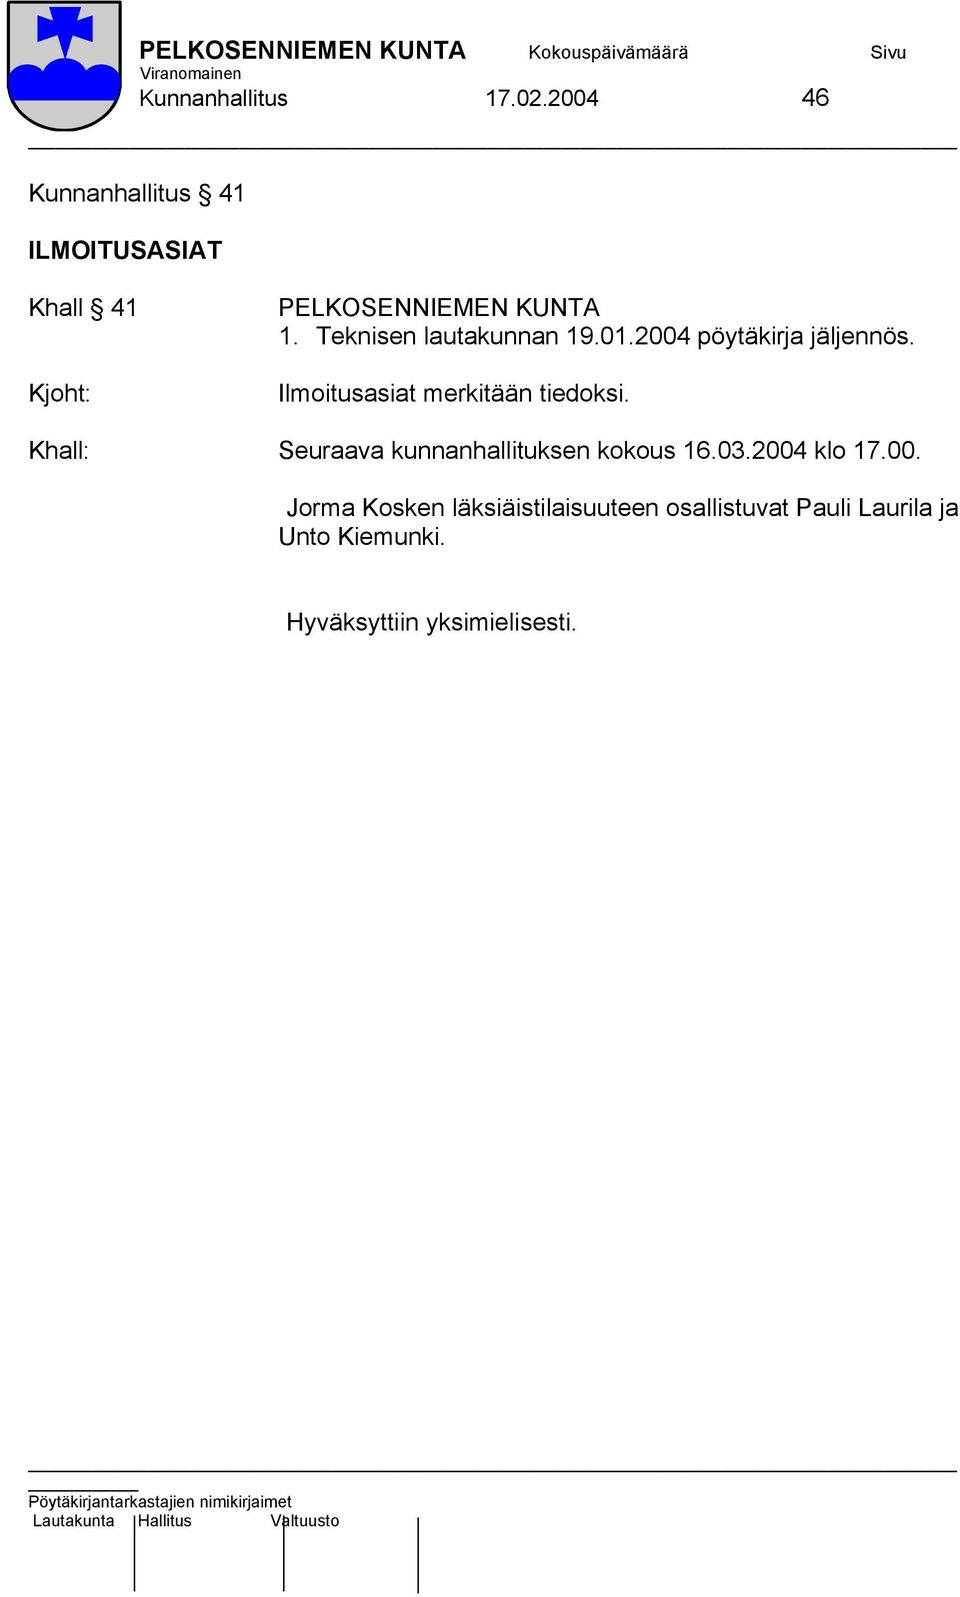 Teknisen lautakunnan 19.01.2004 pöytäkirja jäljennös.